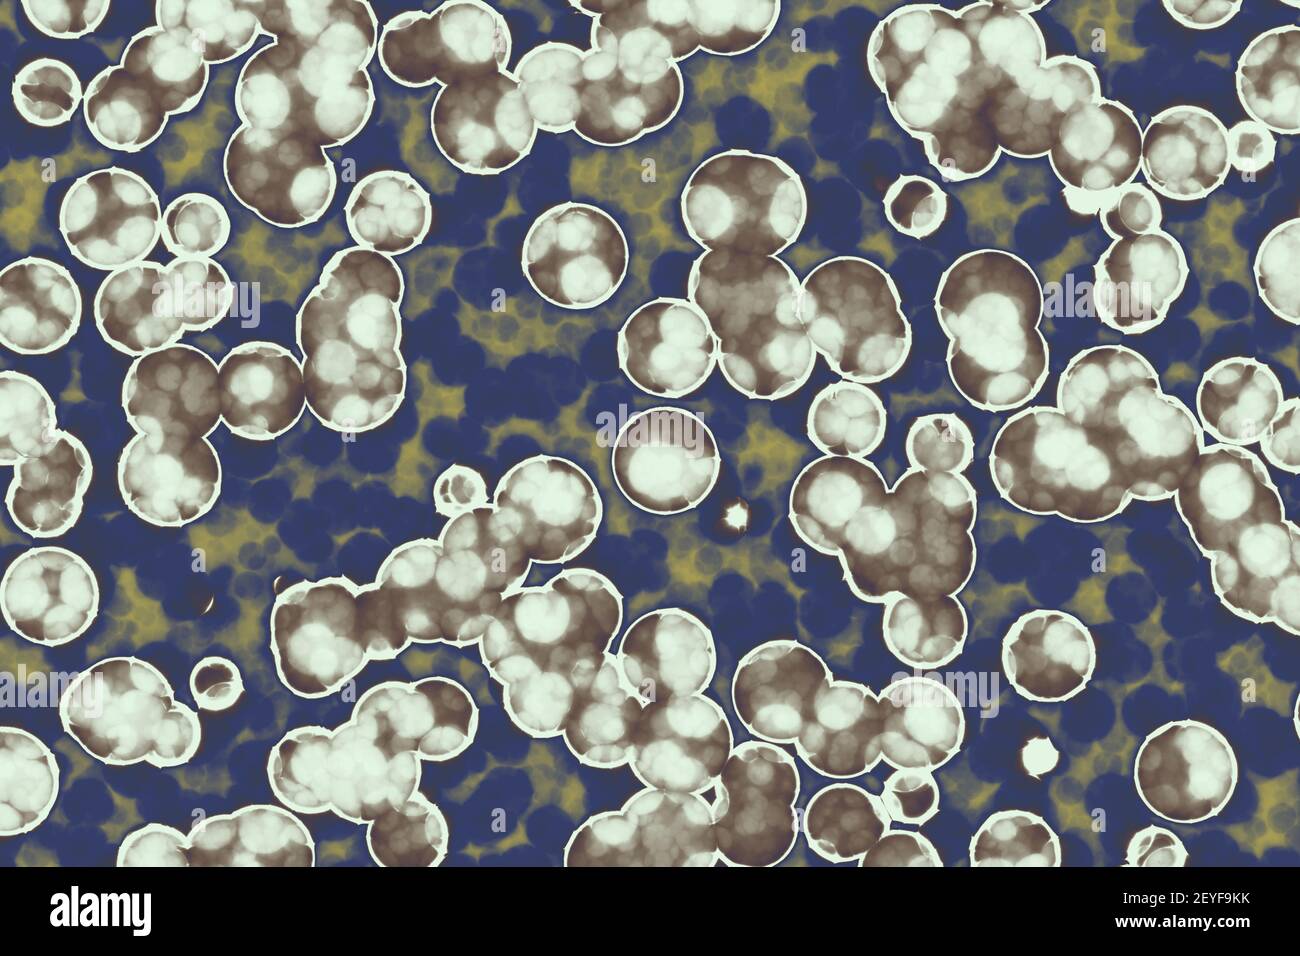 Forme de cellule bactérienne : cocci, bacilles, bactéries contexte spirilla Banque D'Images